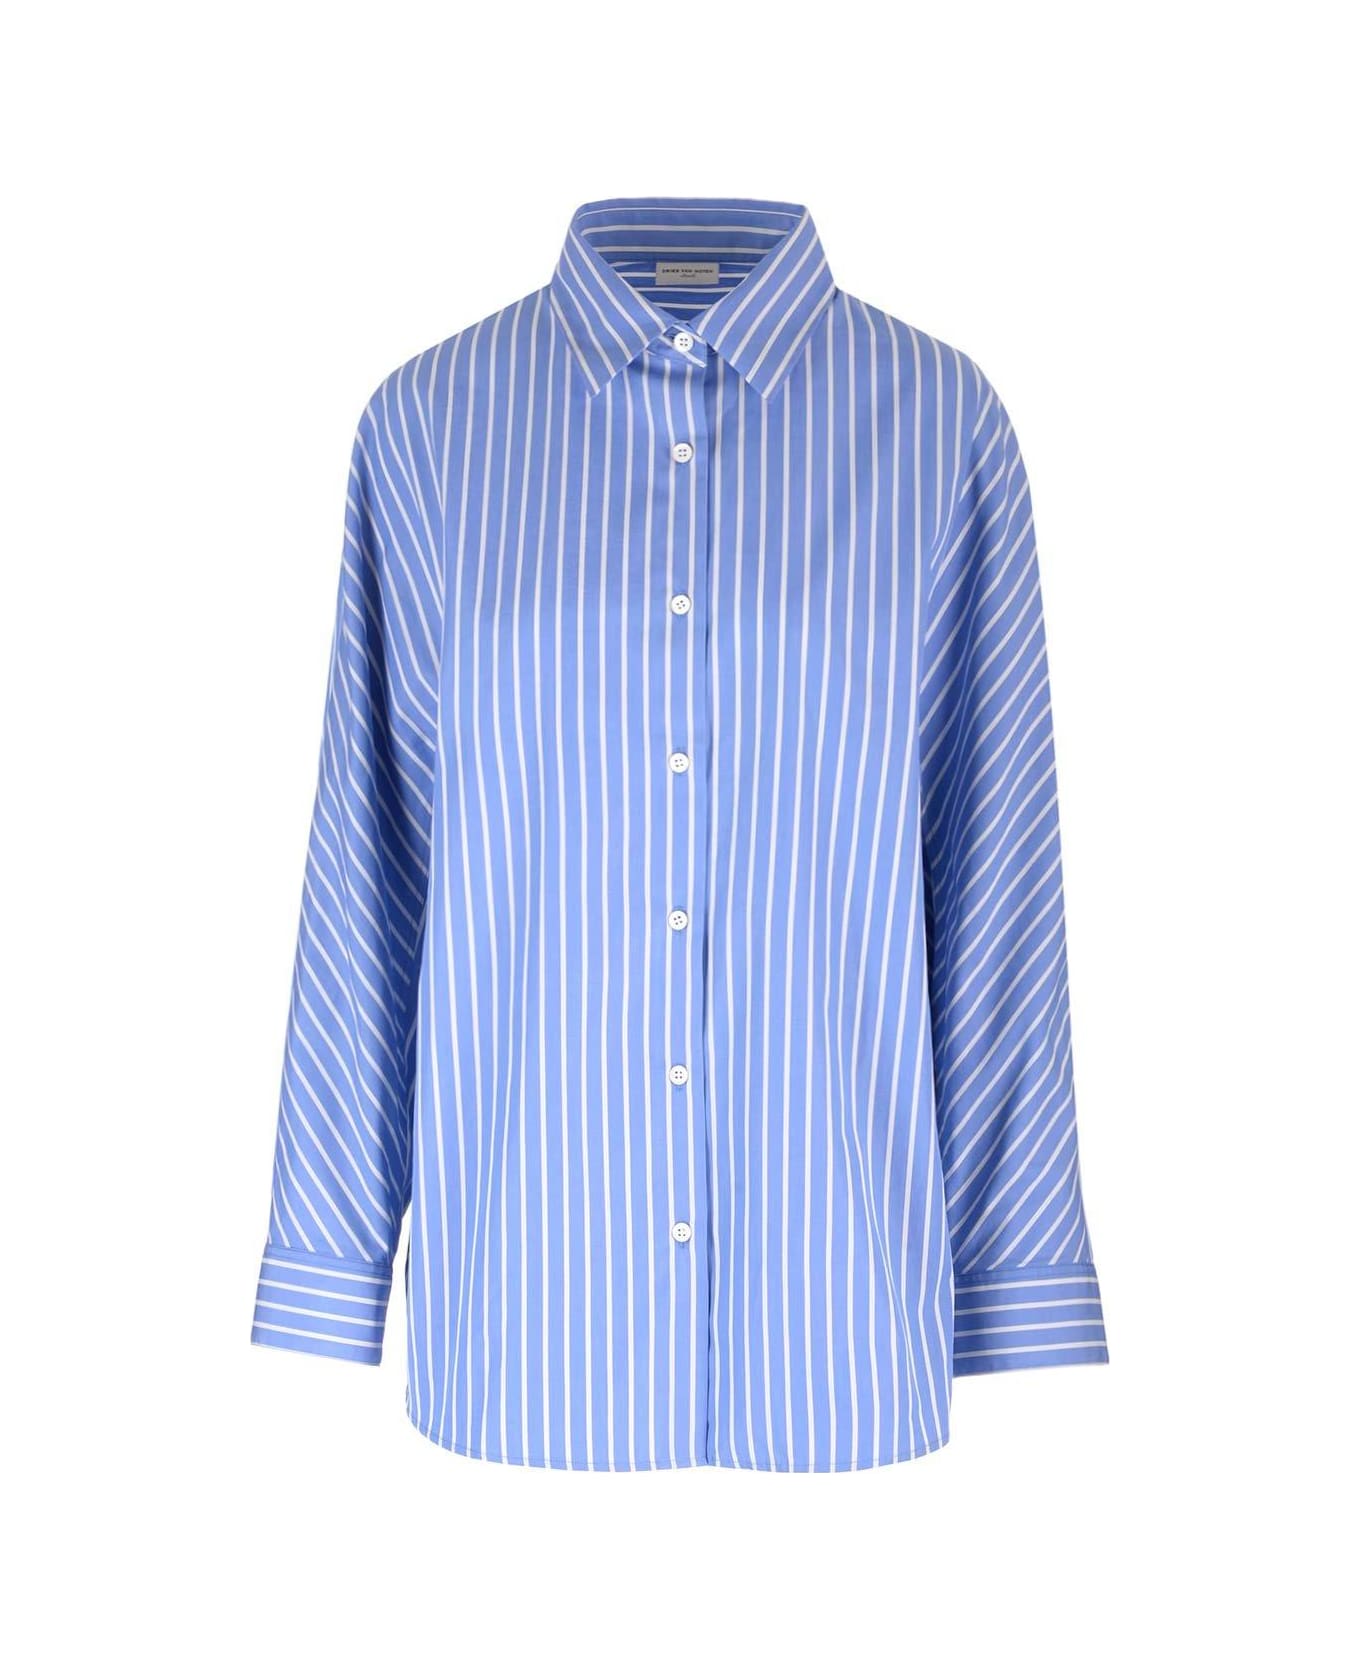 Dries Van Noten Striped Button-up Shirt - Light Blue